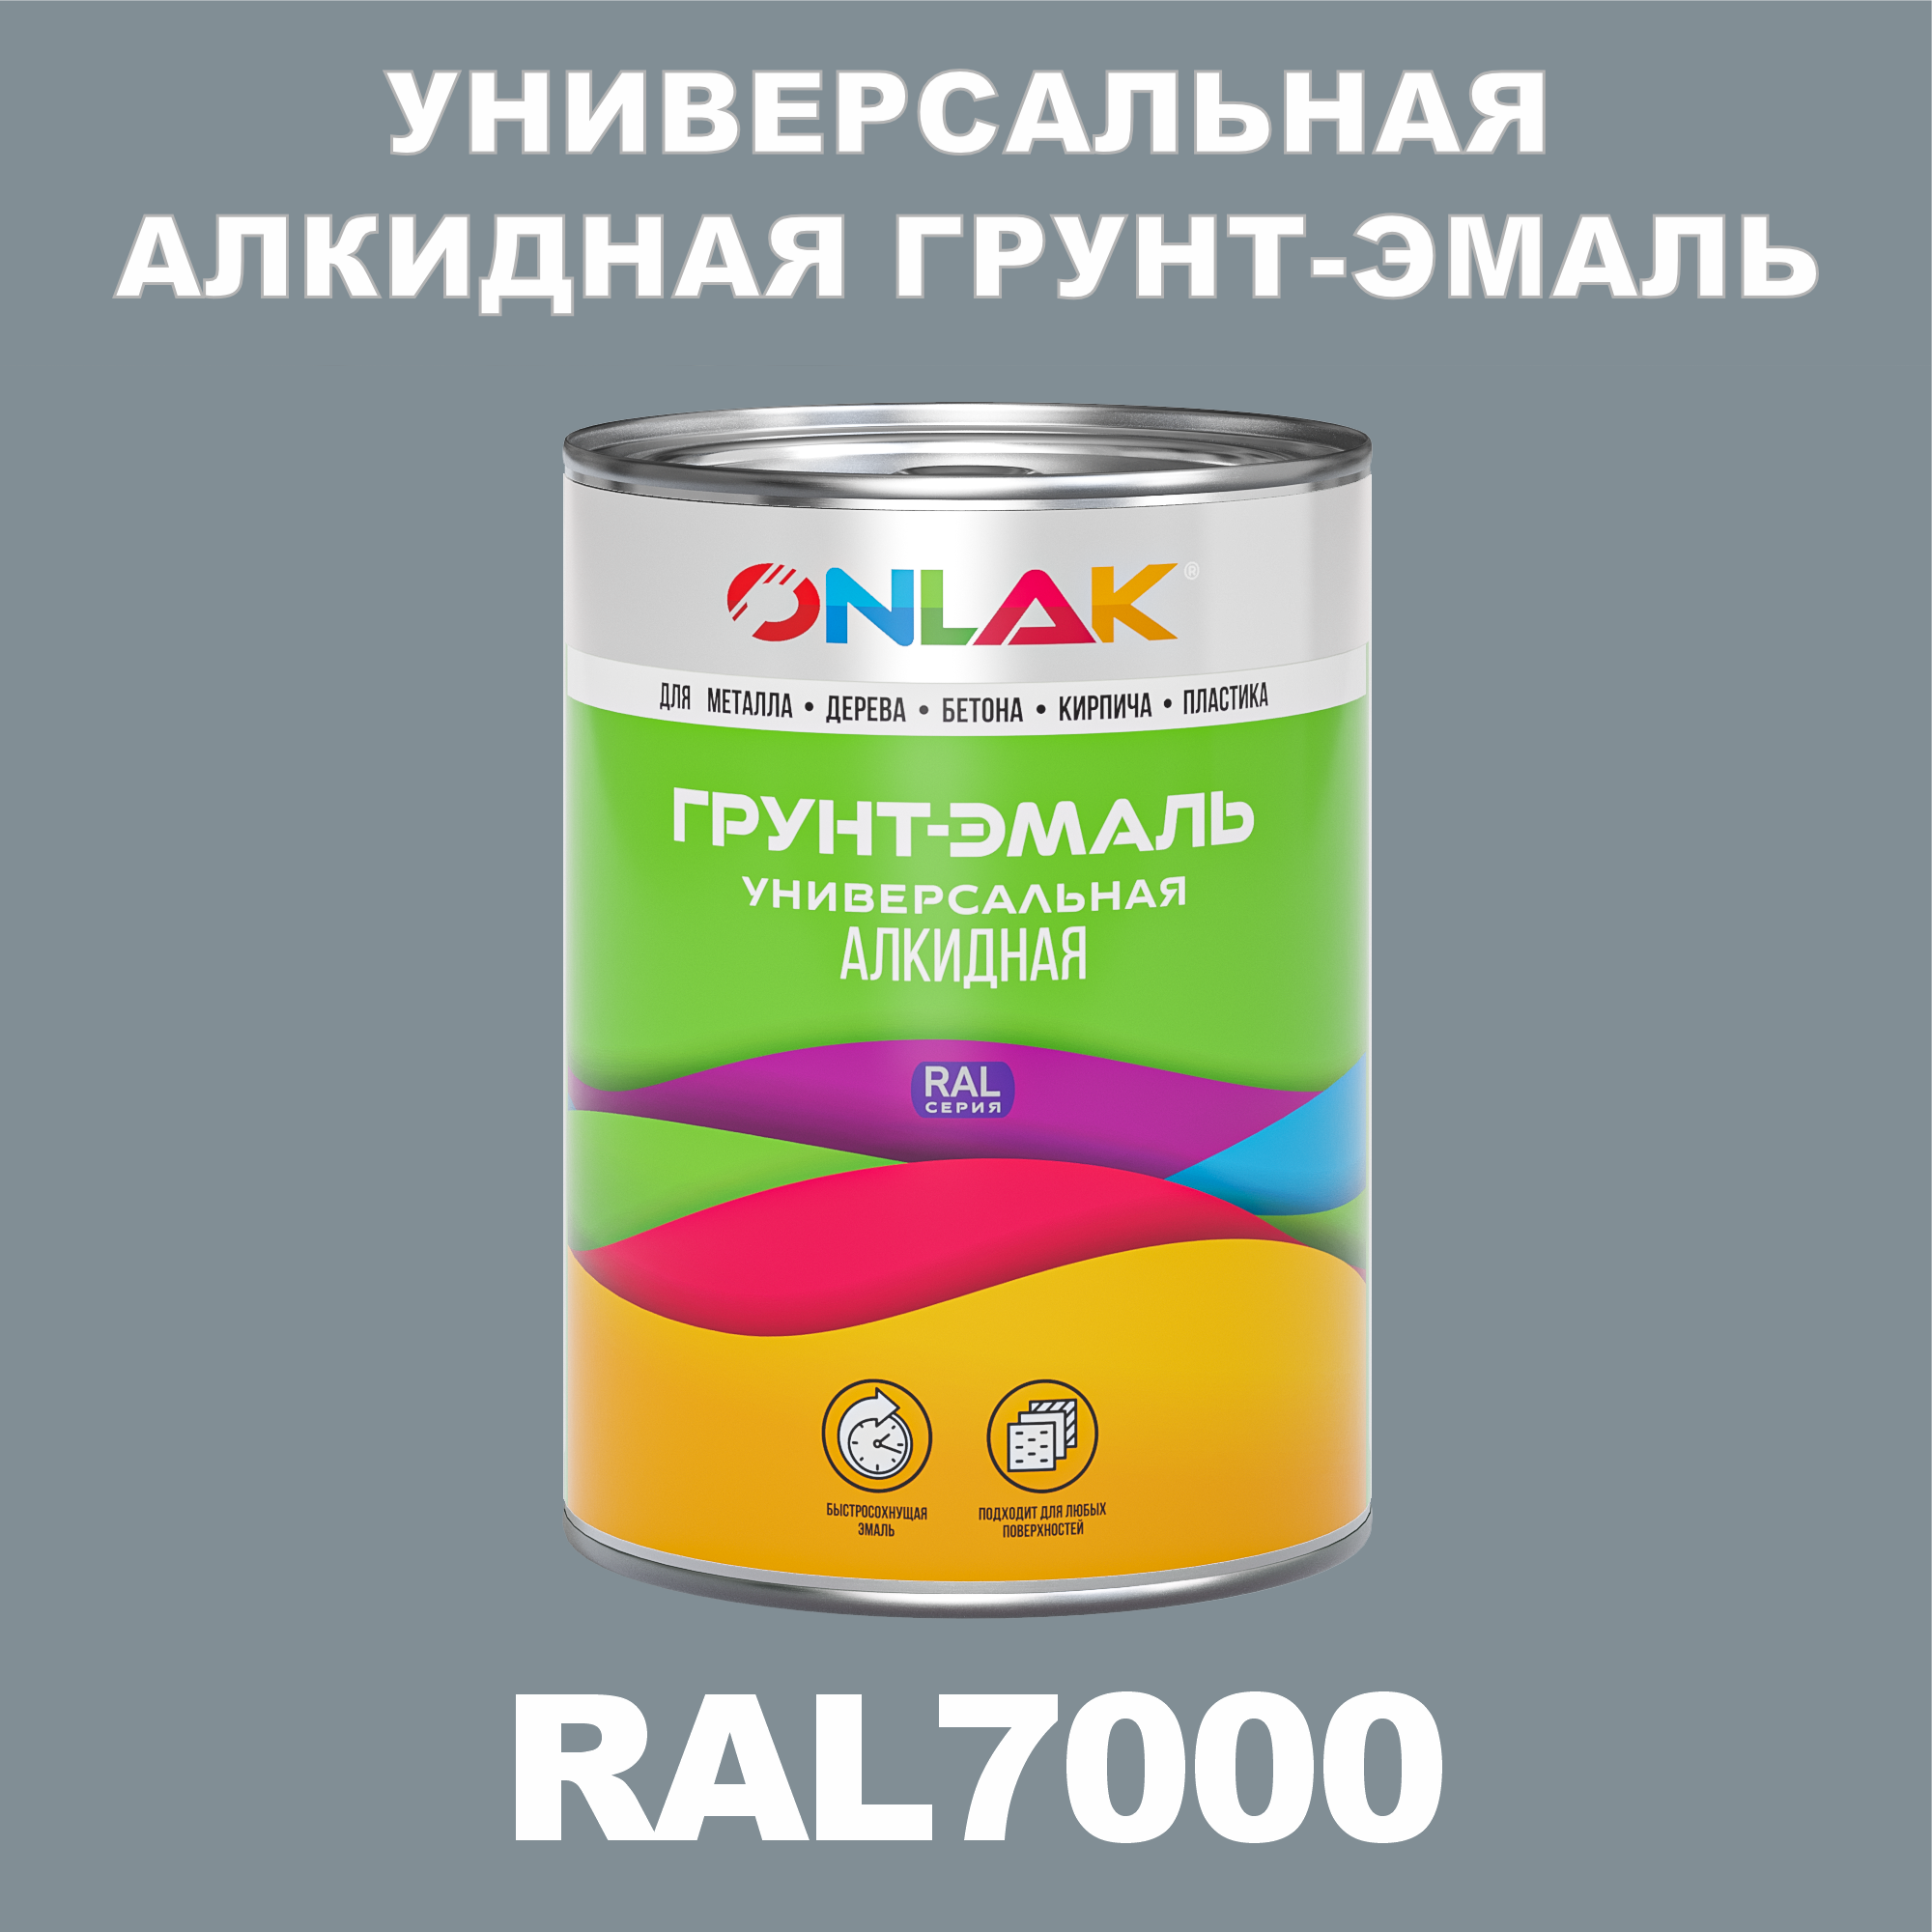 Грунт-эмаль ONLAK 1К RAL7000 антикоррозионная алкидная по металлу по ржавчине 1 кг